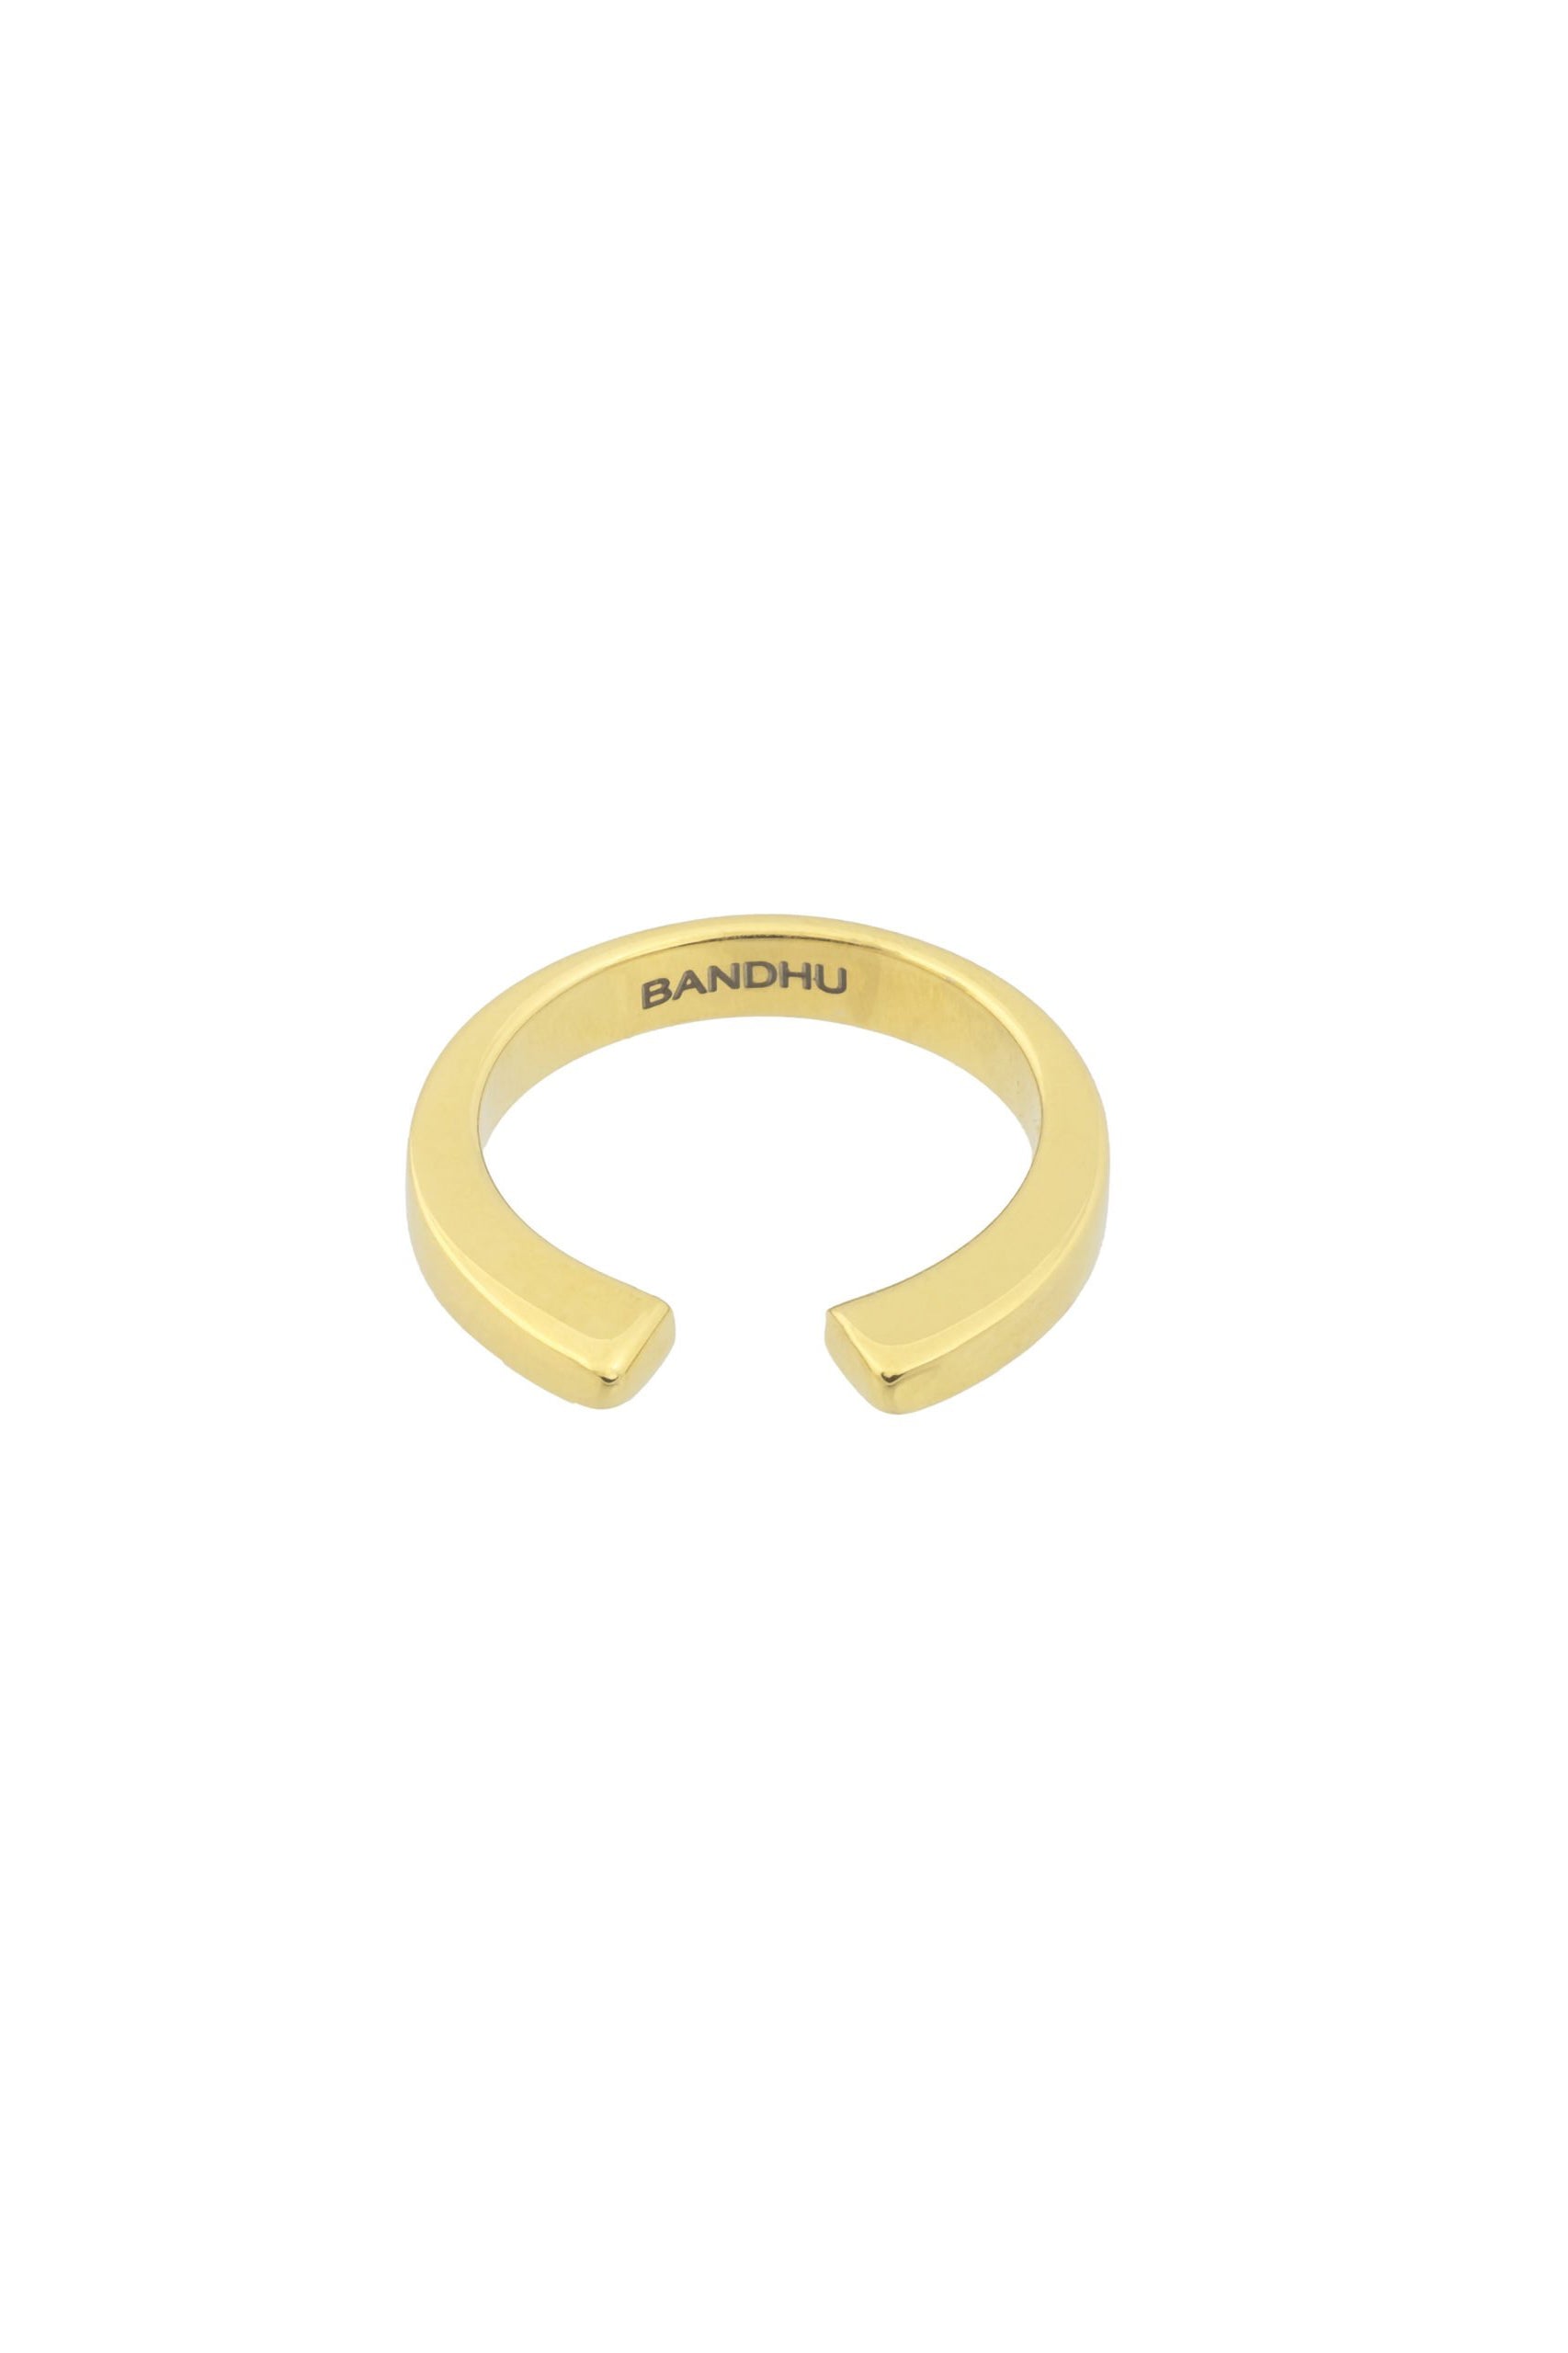 Bandhu Vinyasa Ring - Gold - RUM Amsterdam